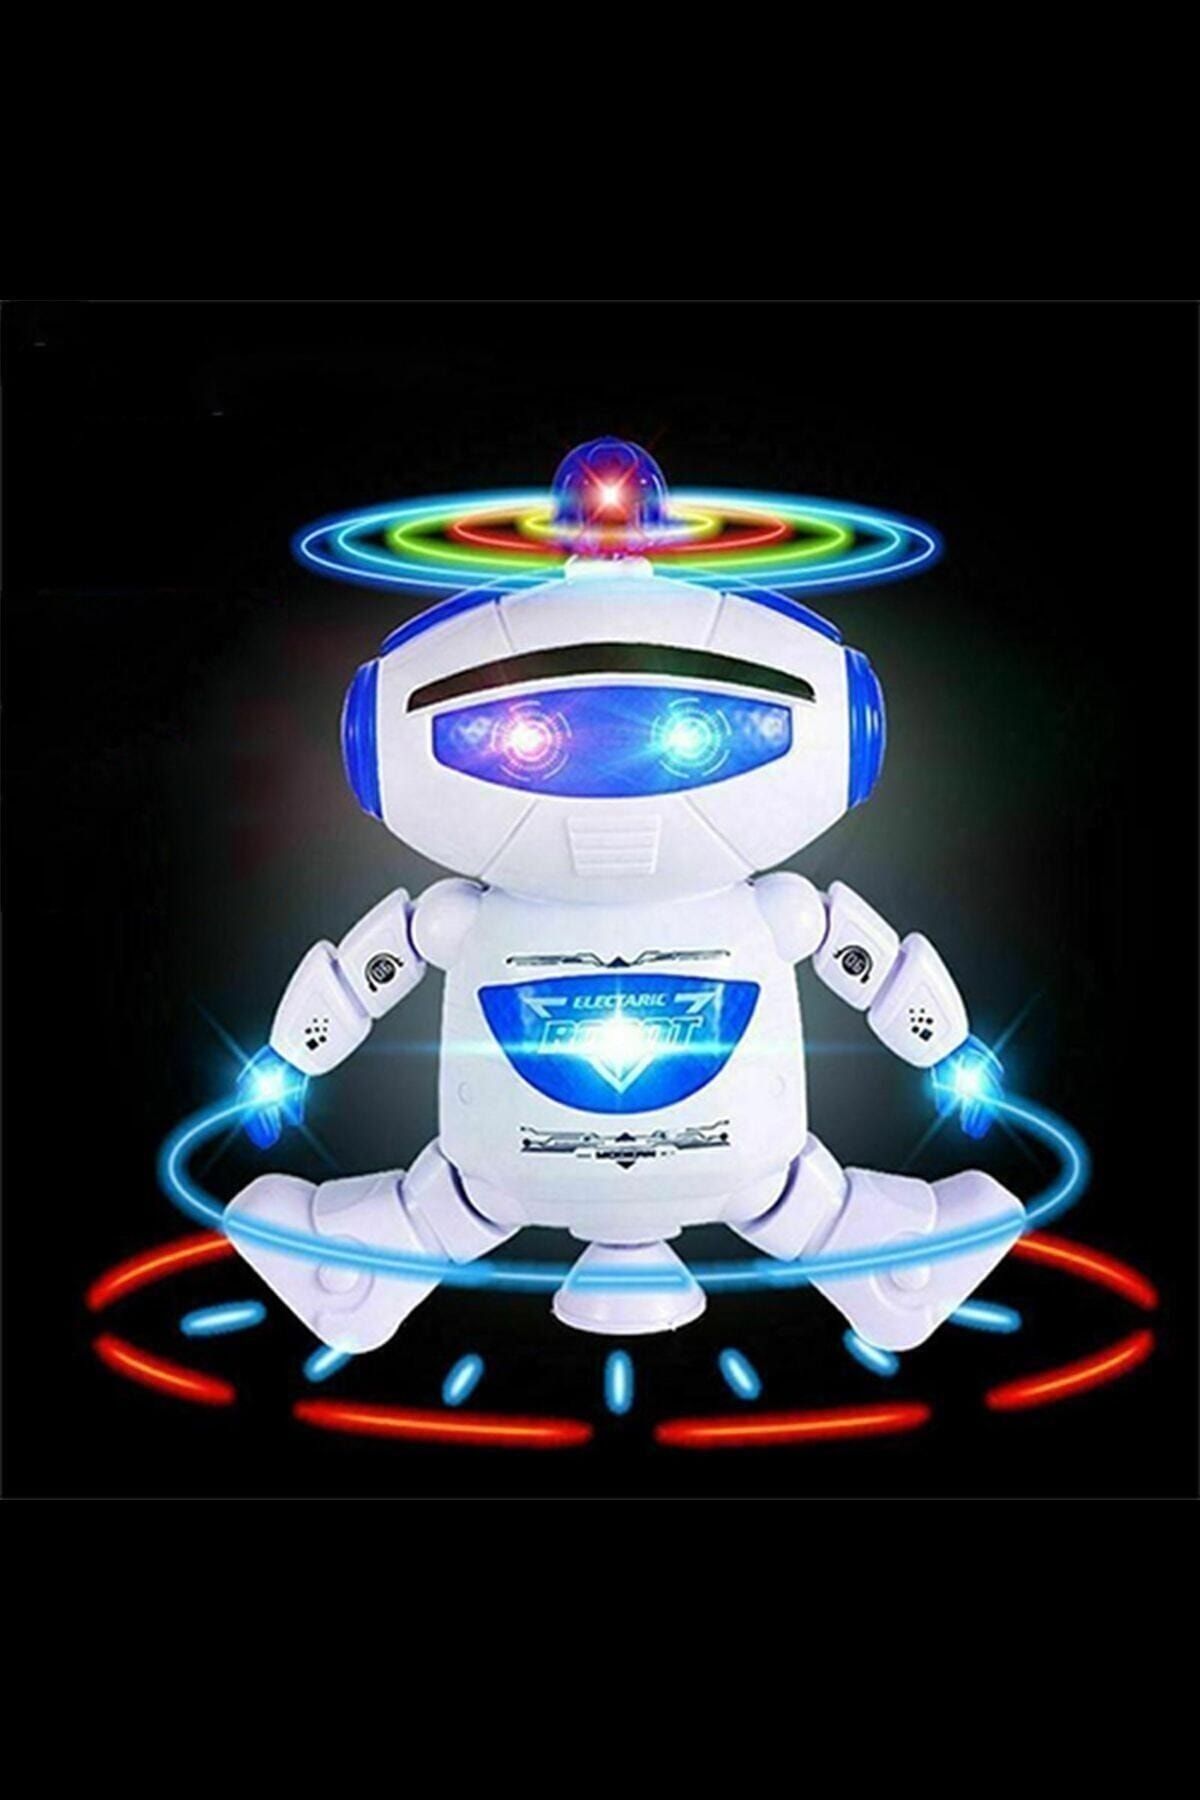 Tamam Pilli Müzikli Ve Işıklı Dans Eden Robot Oyuncak